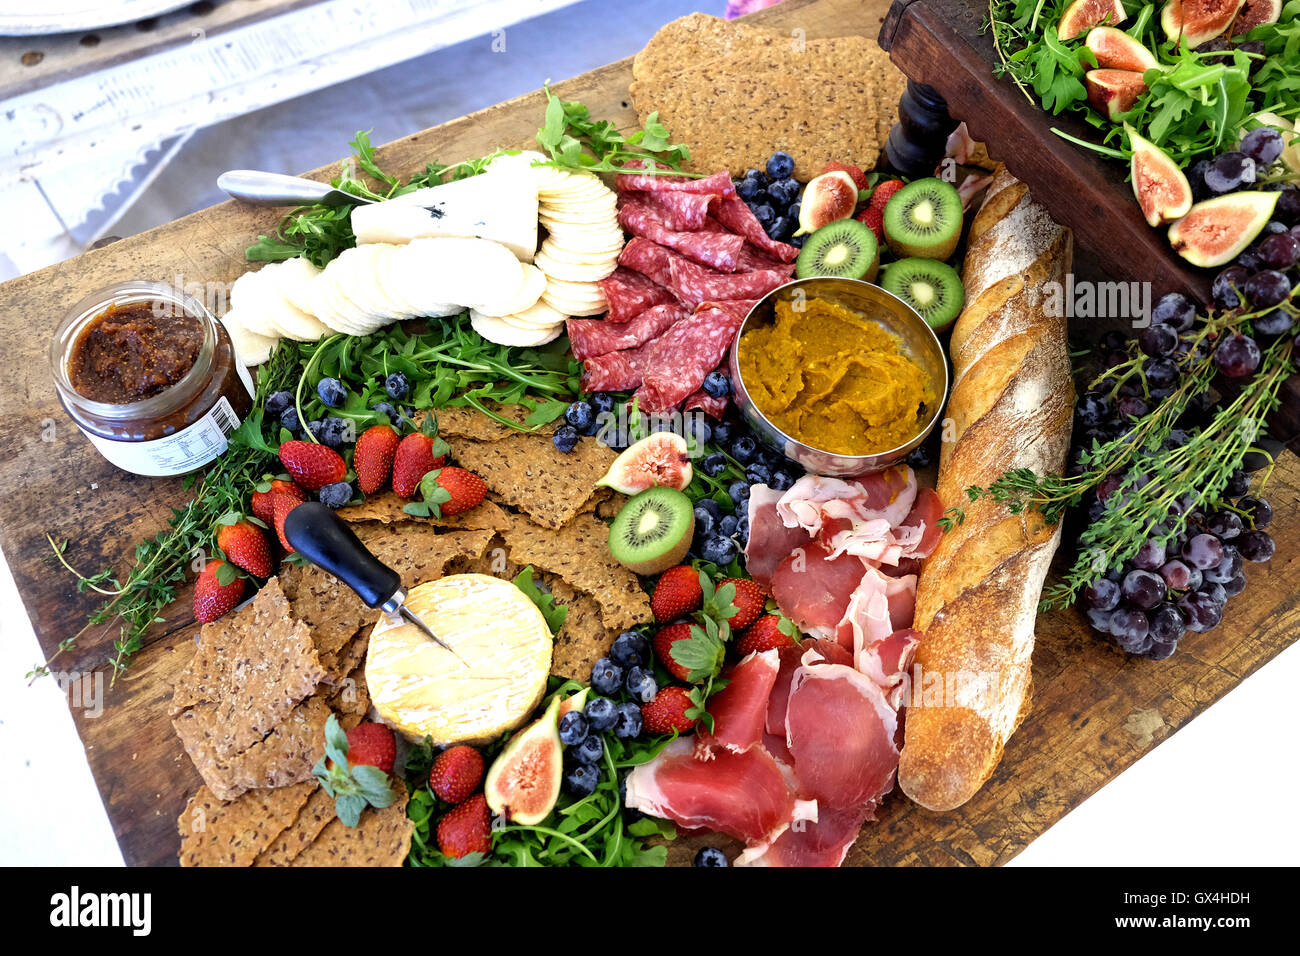 Un plato de comida saludable es ofrecido en una boutique fiesta de apertura Foto de stock